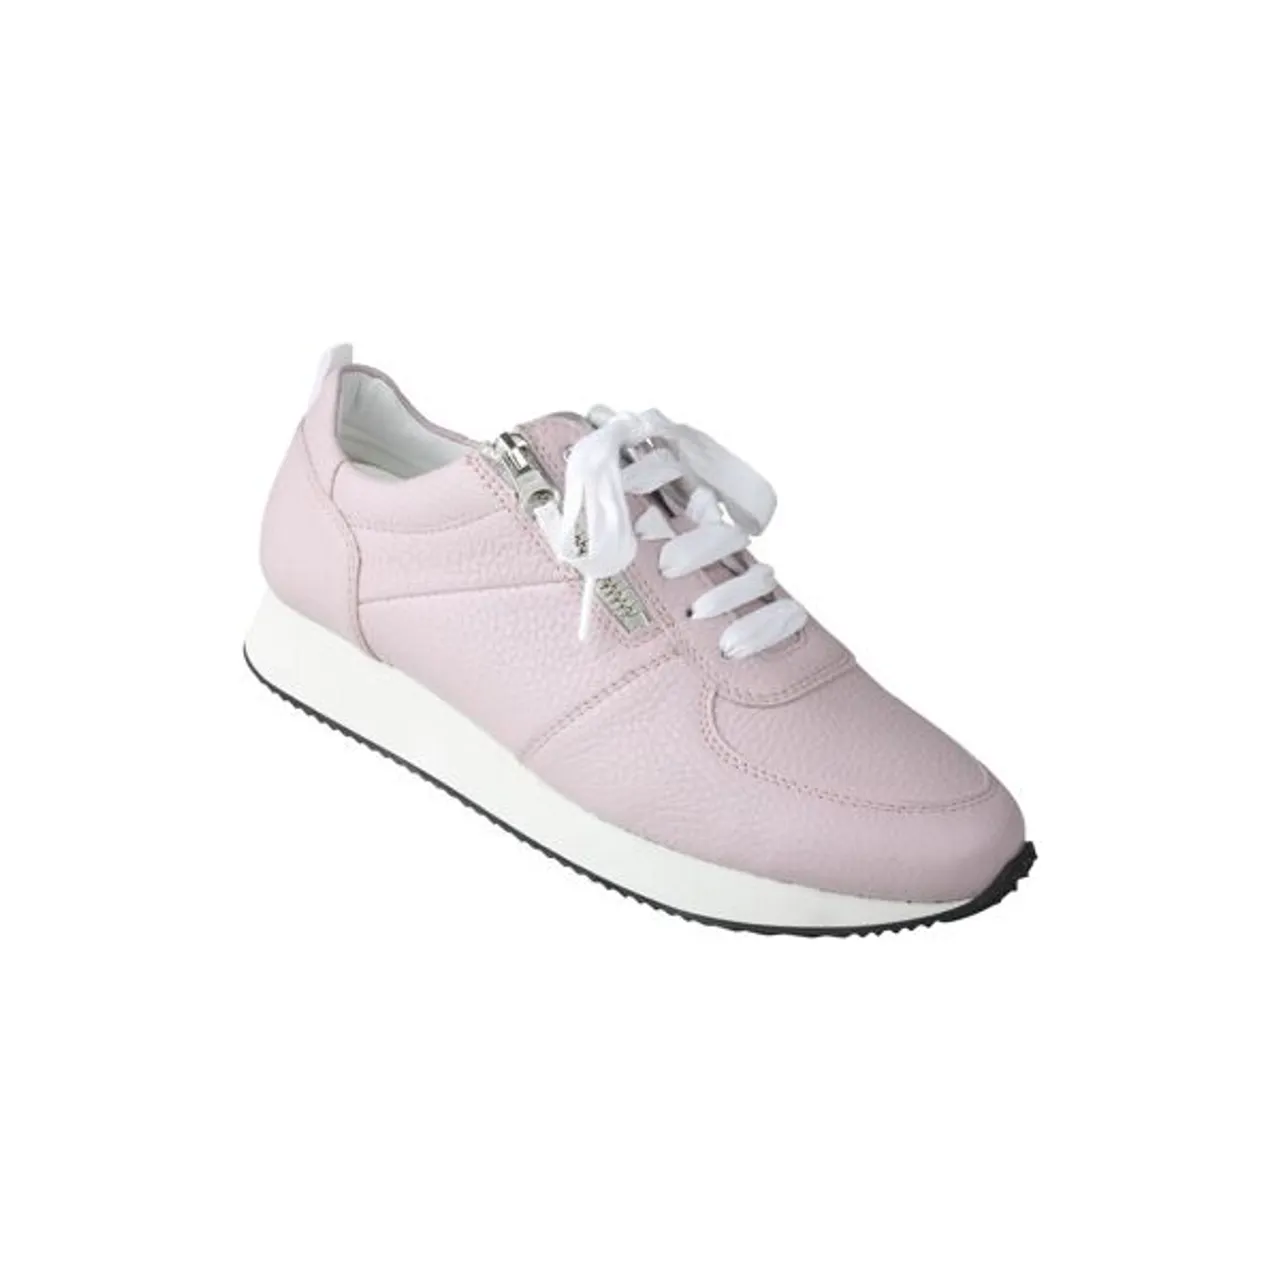 Sneaker LEI BY TESSAMINO "Nadja" Gr. 44, rosa Damen Schuhe Sneaker